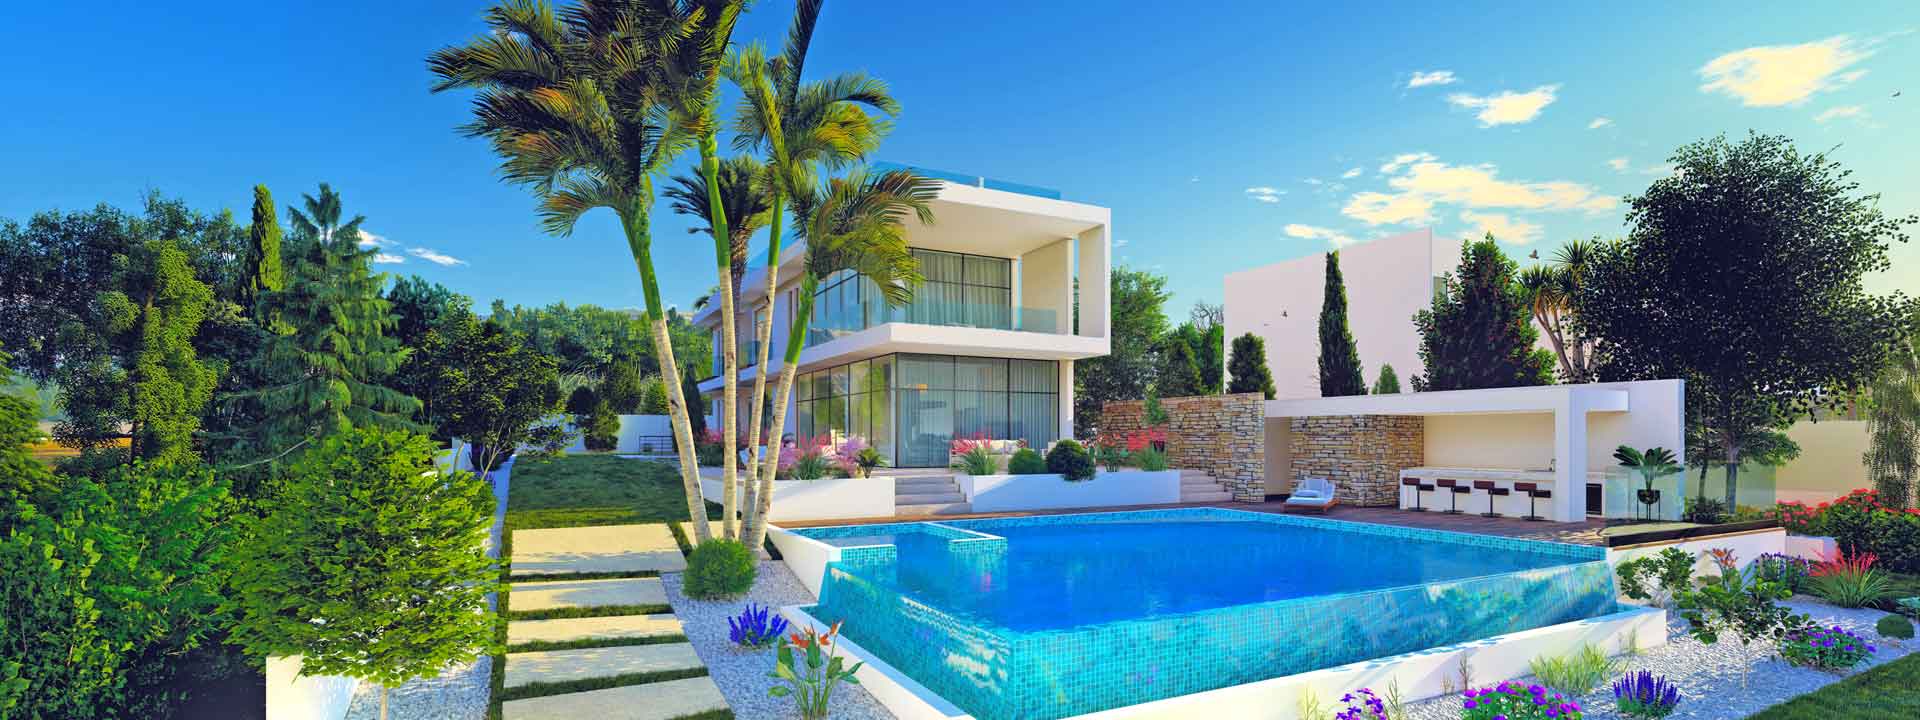 Calma Beachfront Villas – Villa No. 3A